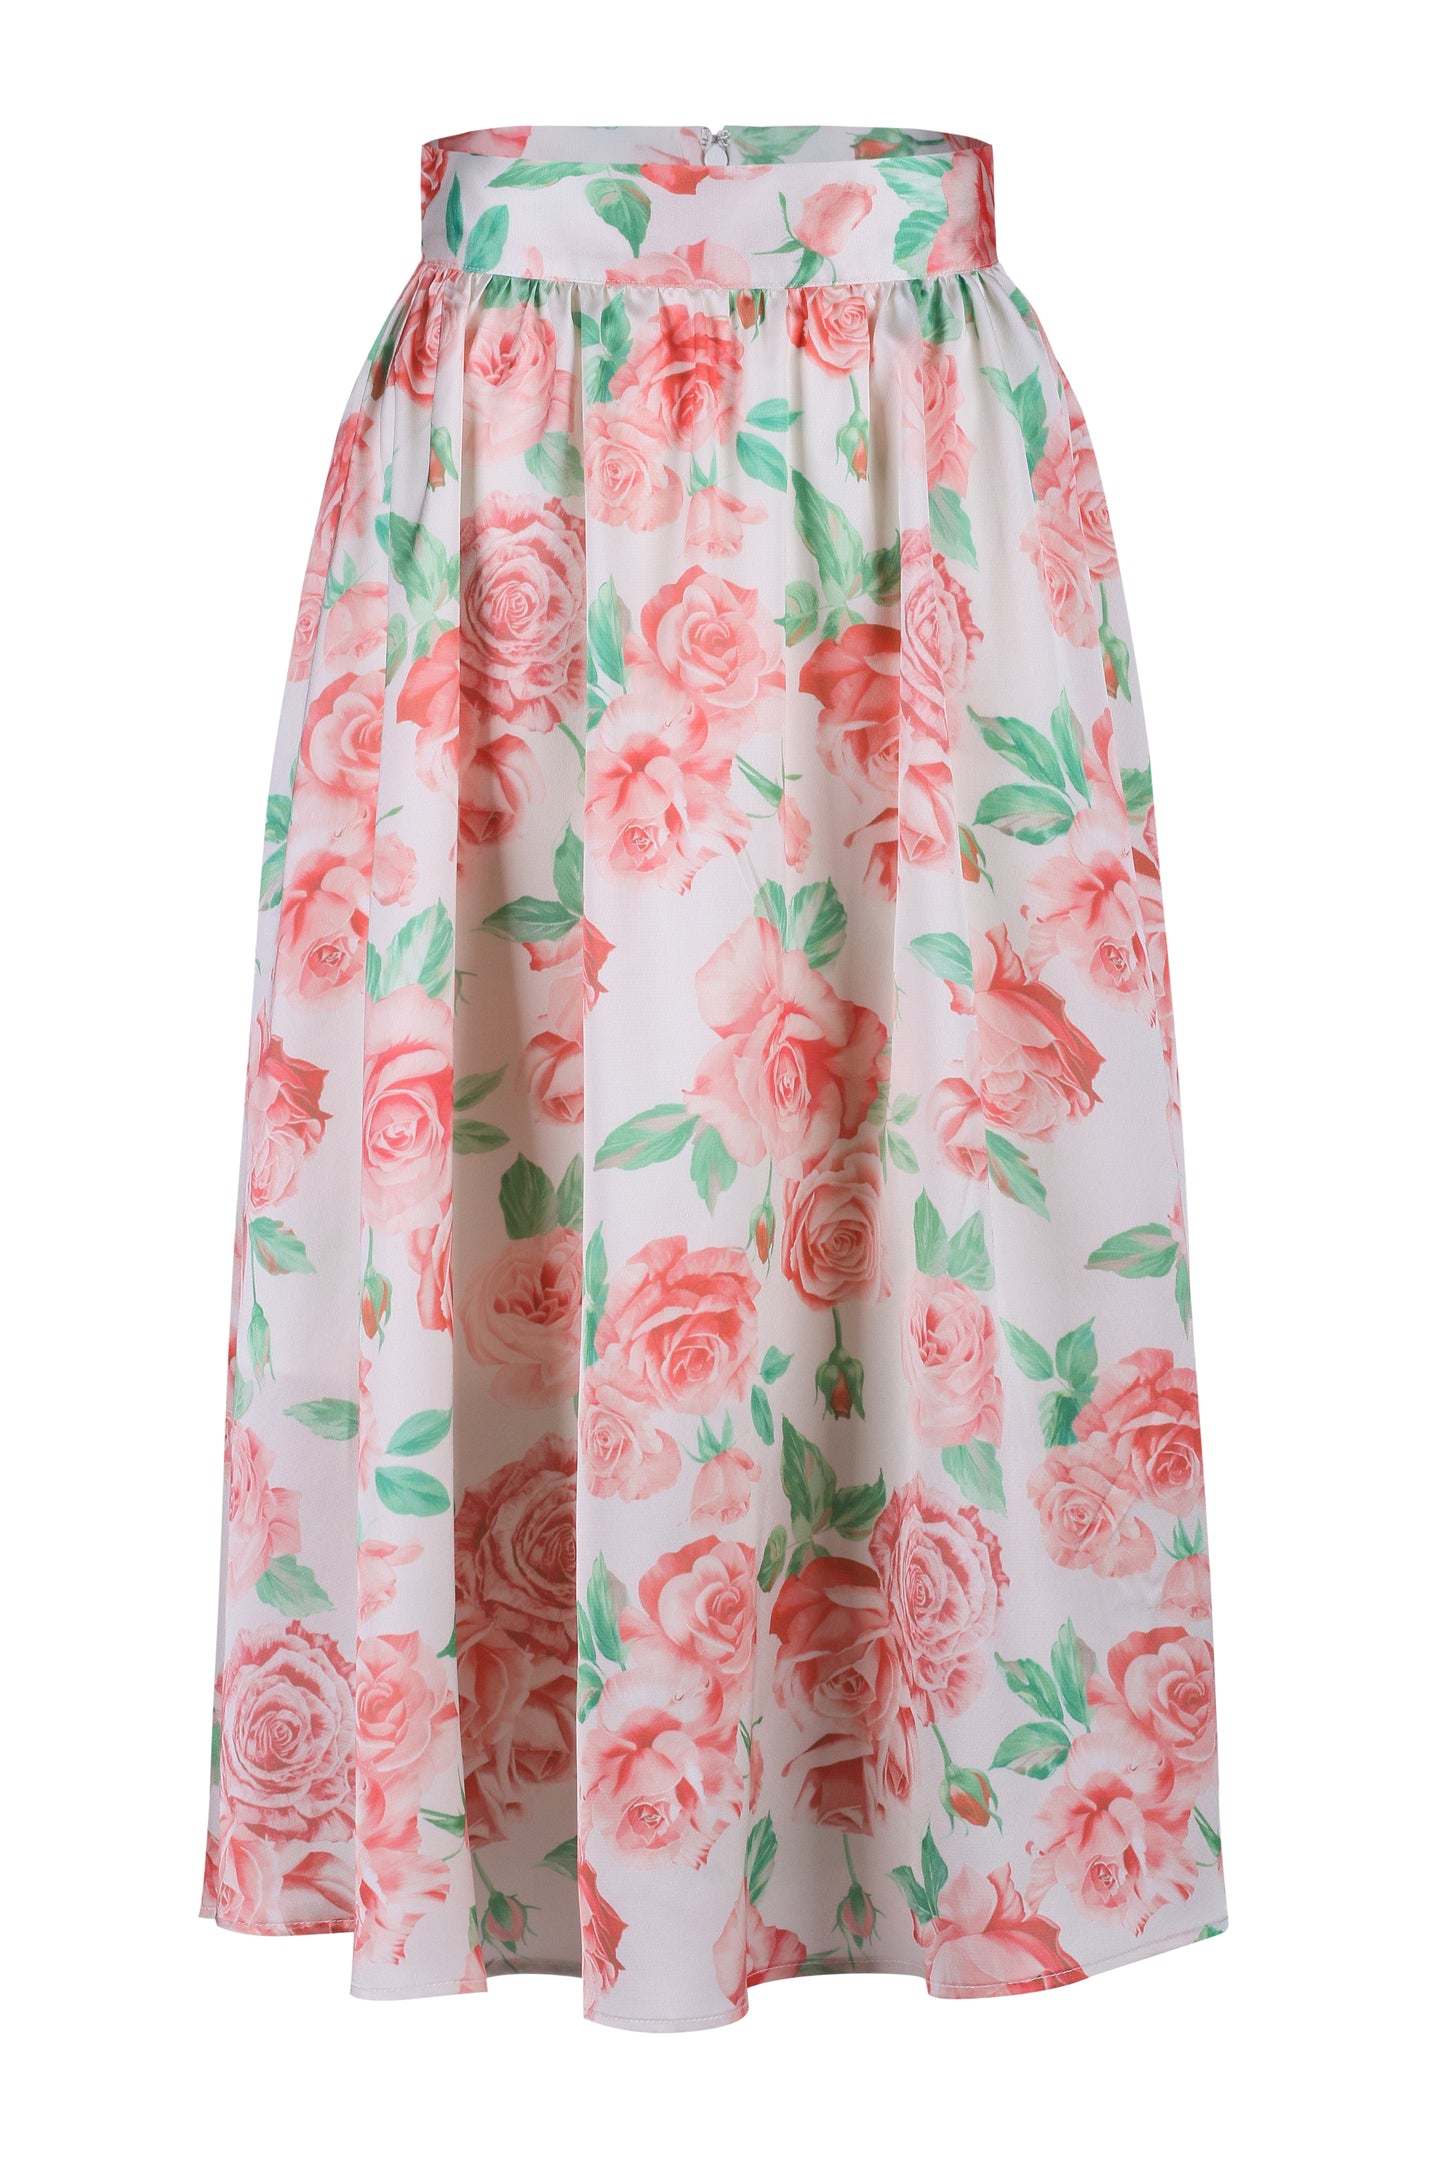 Bluebell Skirt- Light Coral Rose